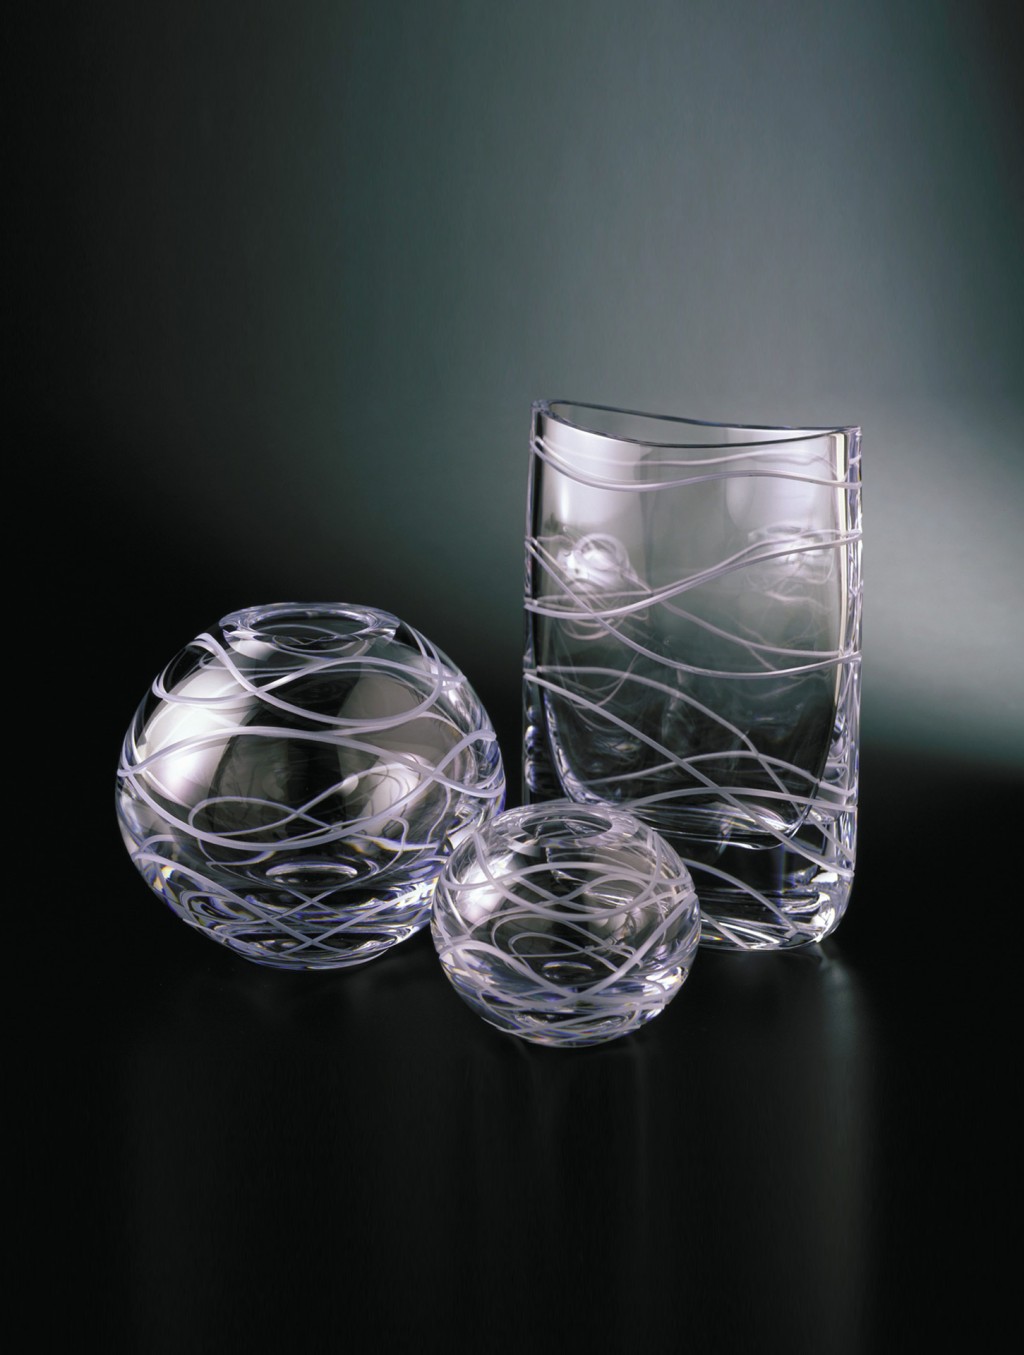 玻璃杯,花瓶,杯子,纹样,桌面,karim